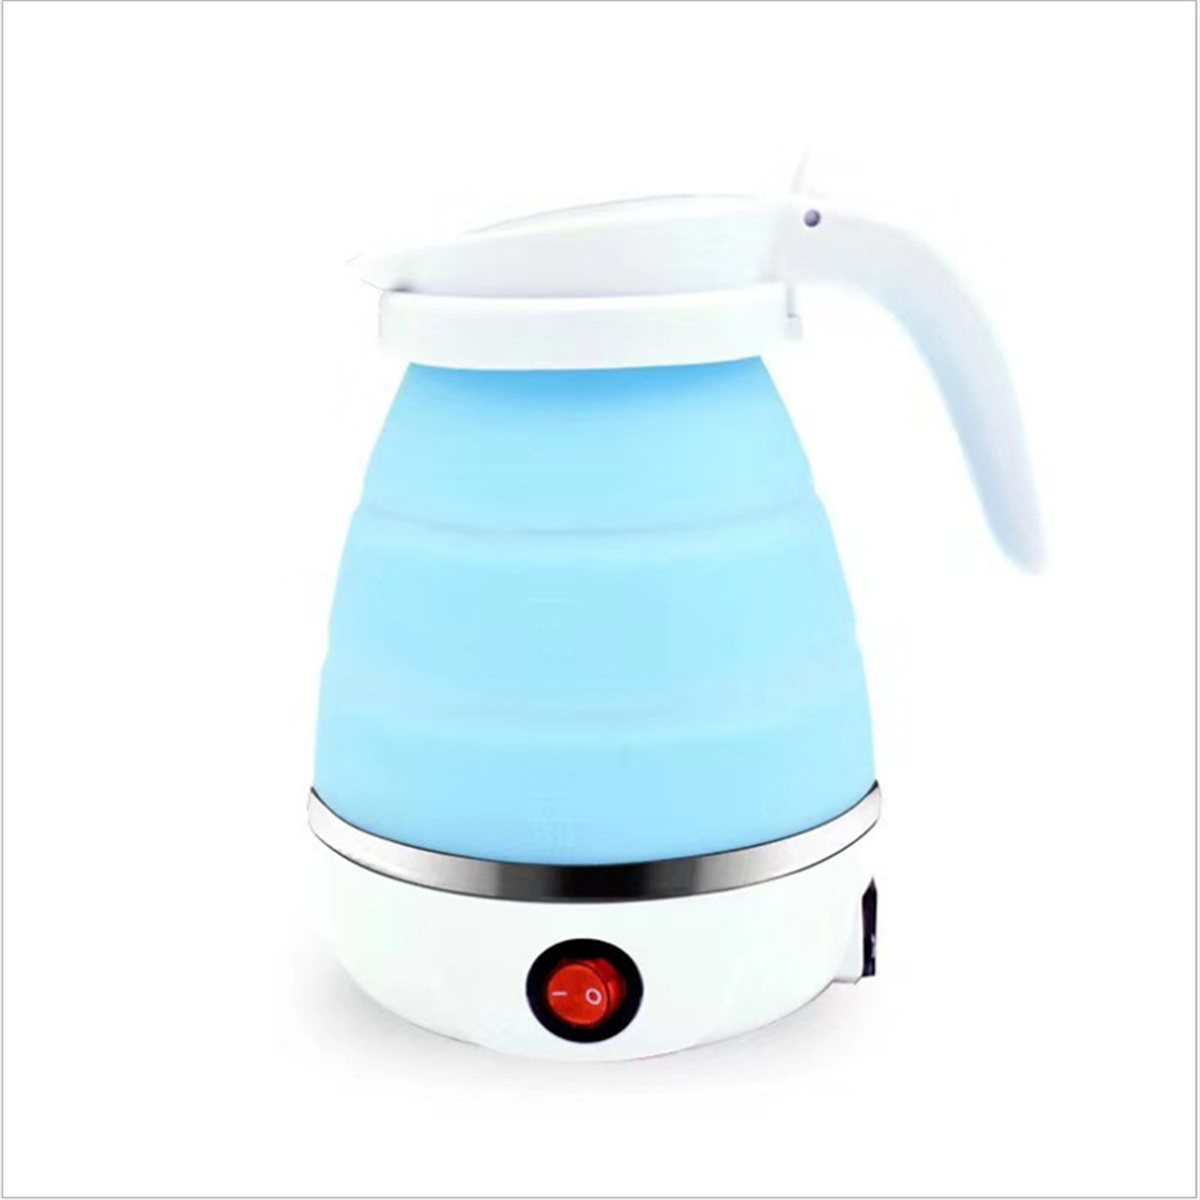 Wasserkocher Mini-Wasserkocher Weiß Wasserkocher Elektrischer Zusammenklappbarer Wasserkocher, 304 FEI Weiß Edelstahl